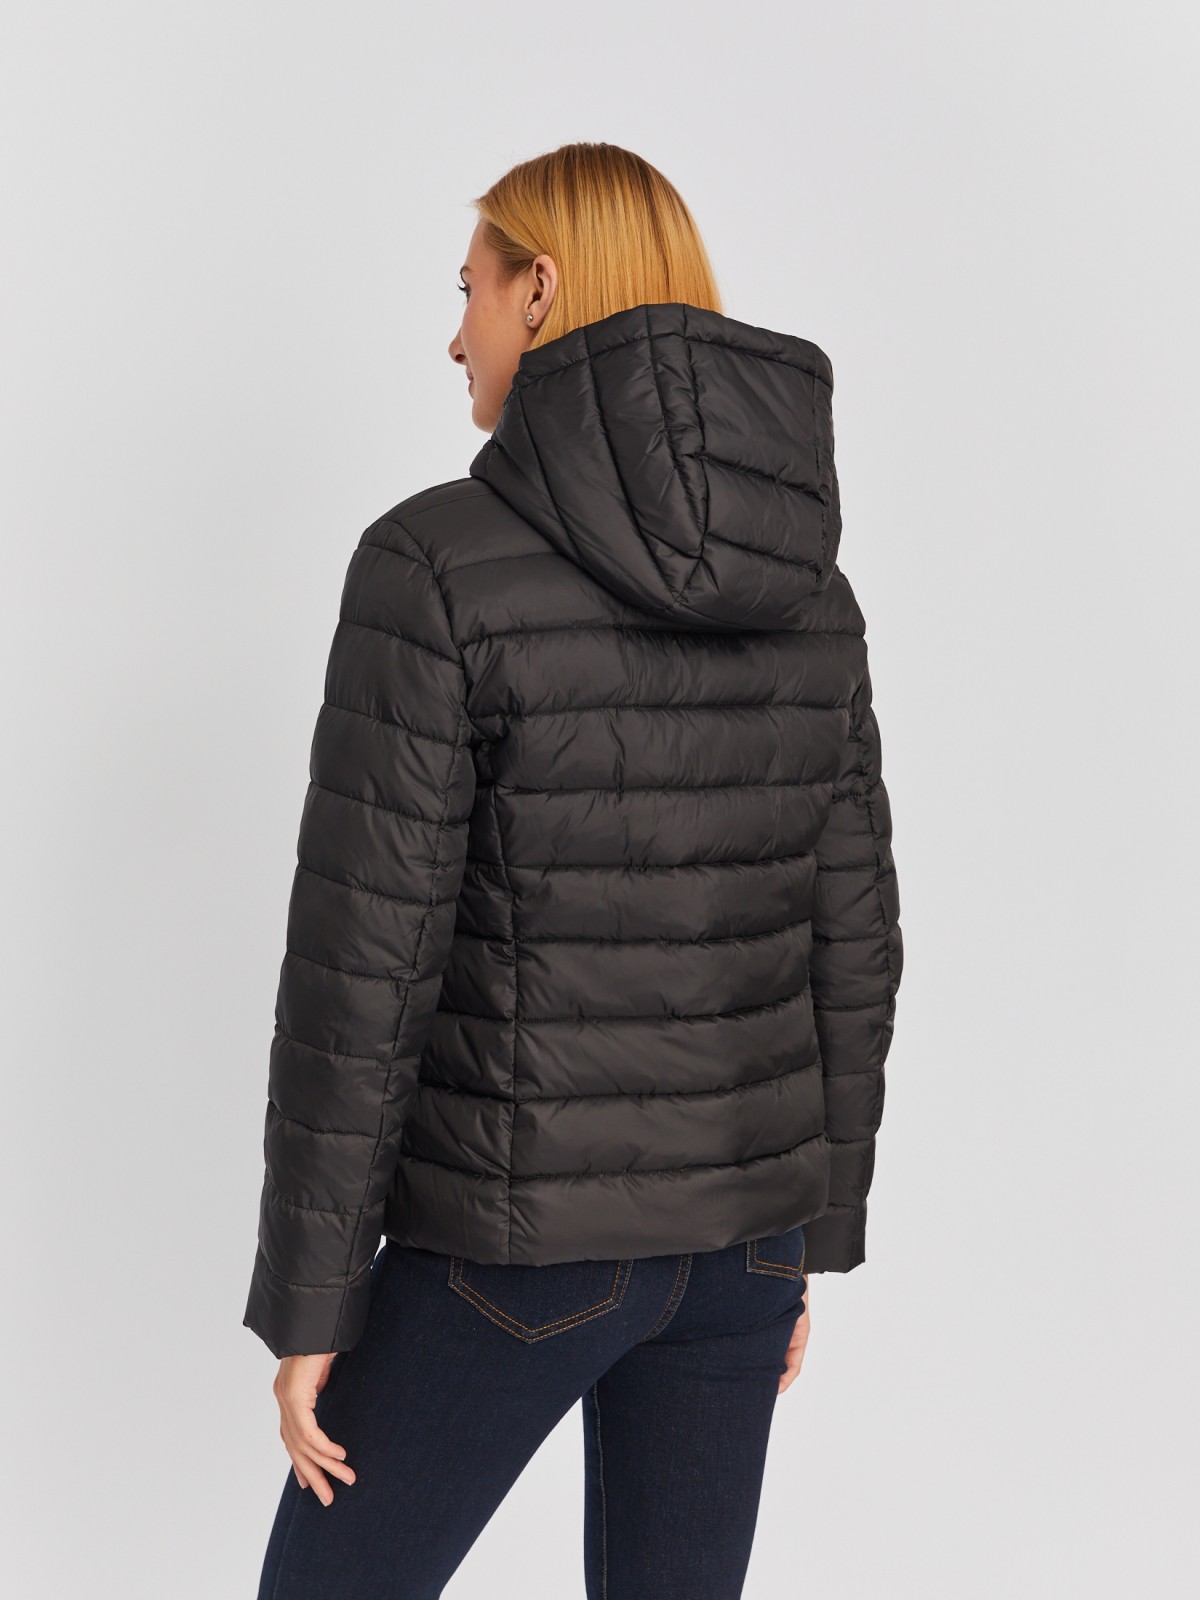 Утеплённая стёганая куртка укороченного фасона с капюшоном zolla 023335112224, цвет черный, размер S - фото 6